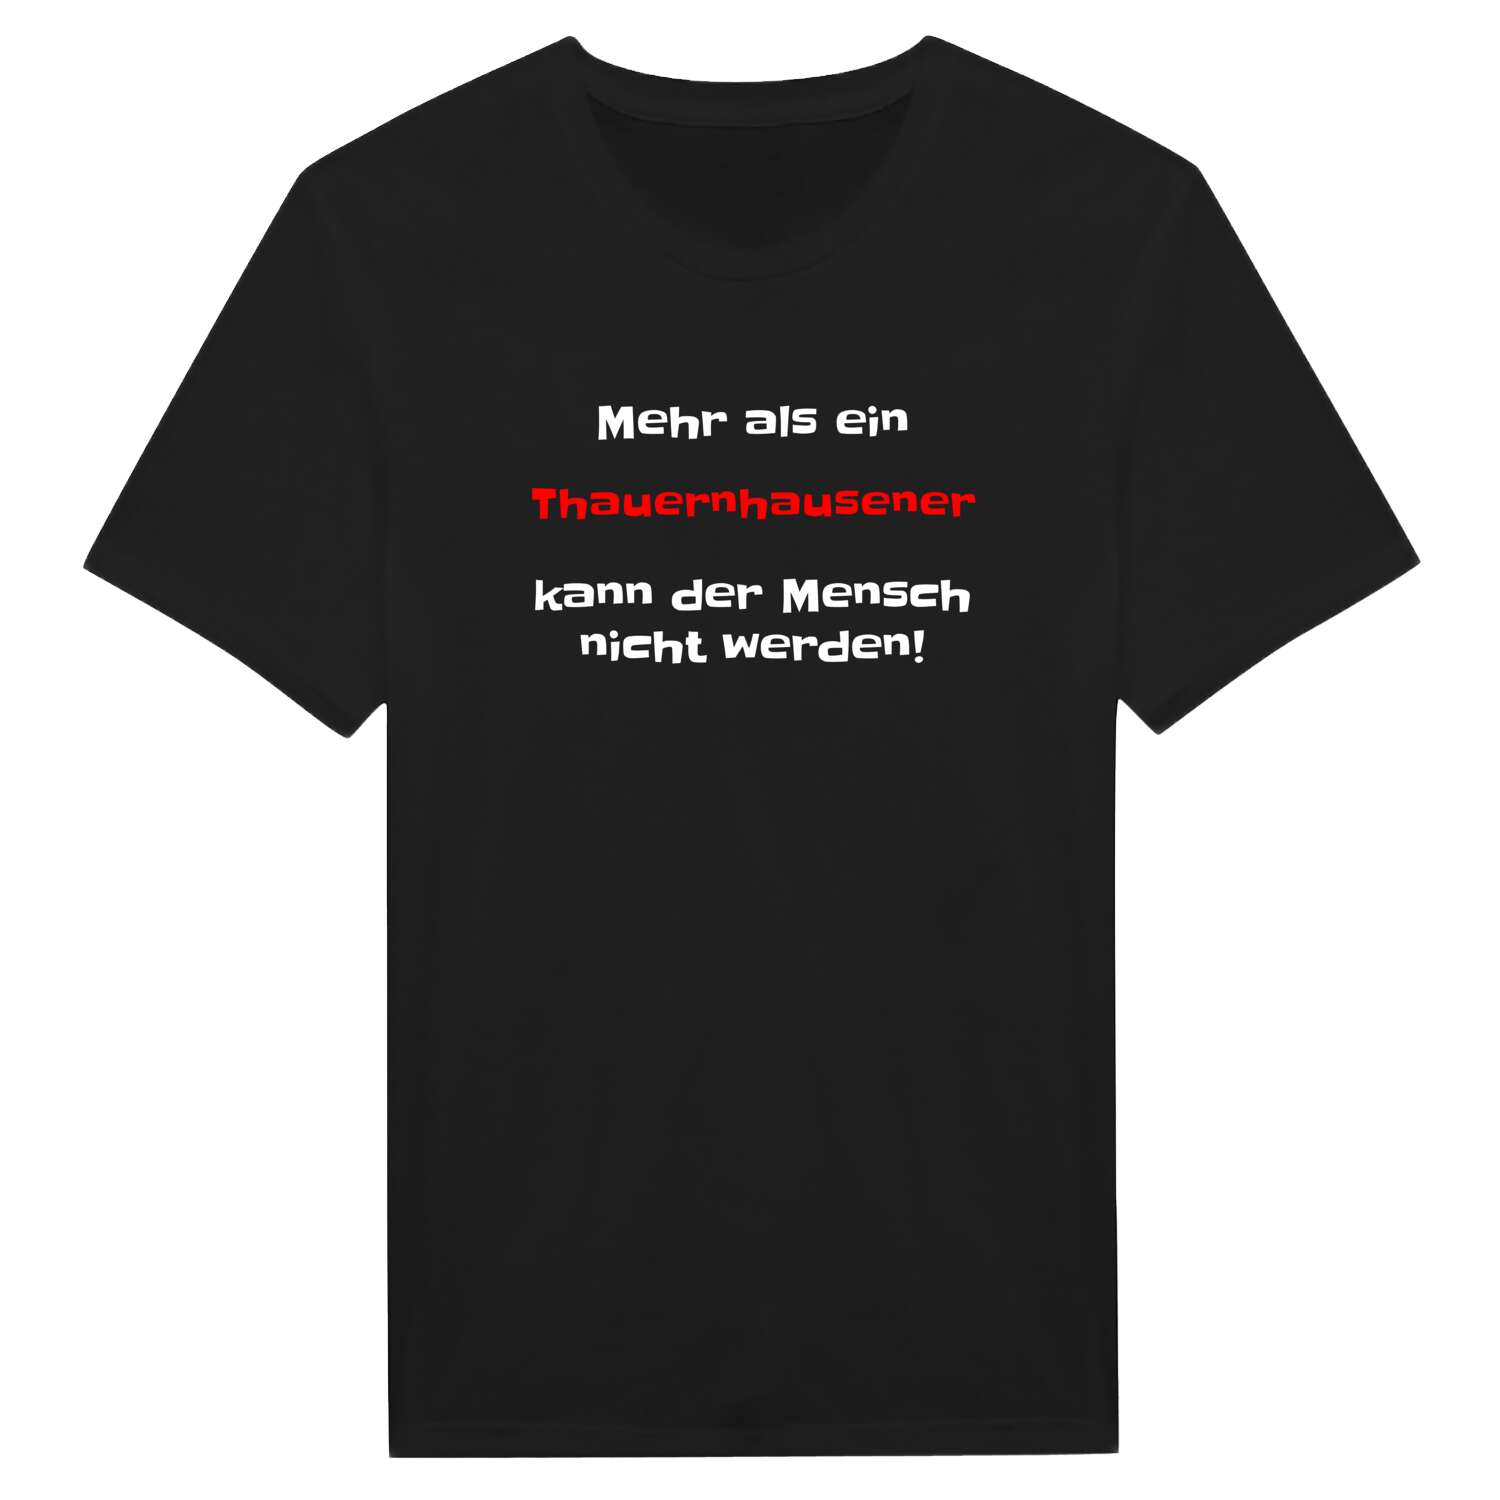 Thauernhausen T-Shirt »Mehr als ein«